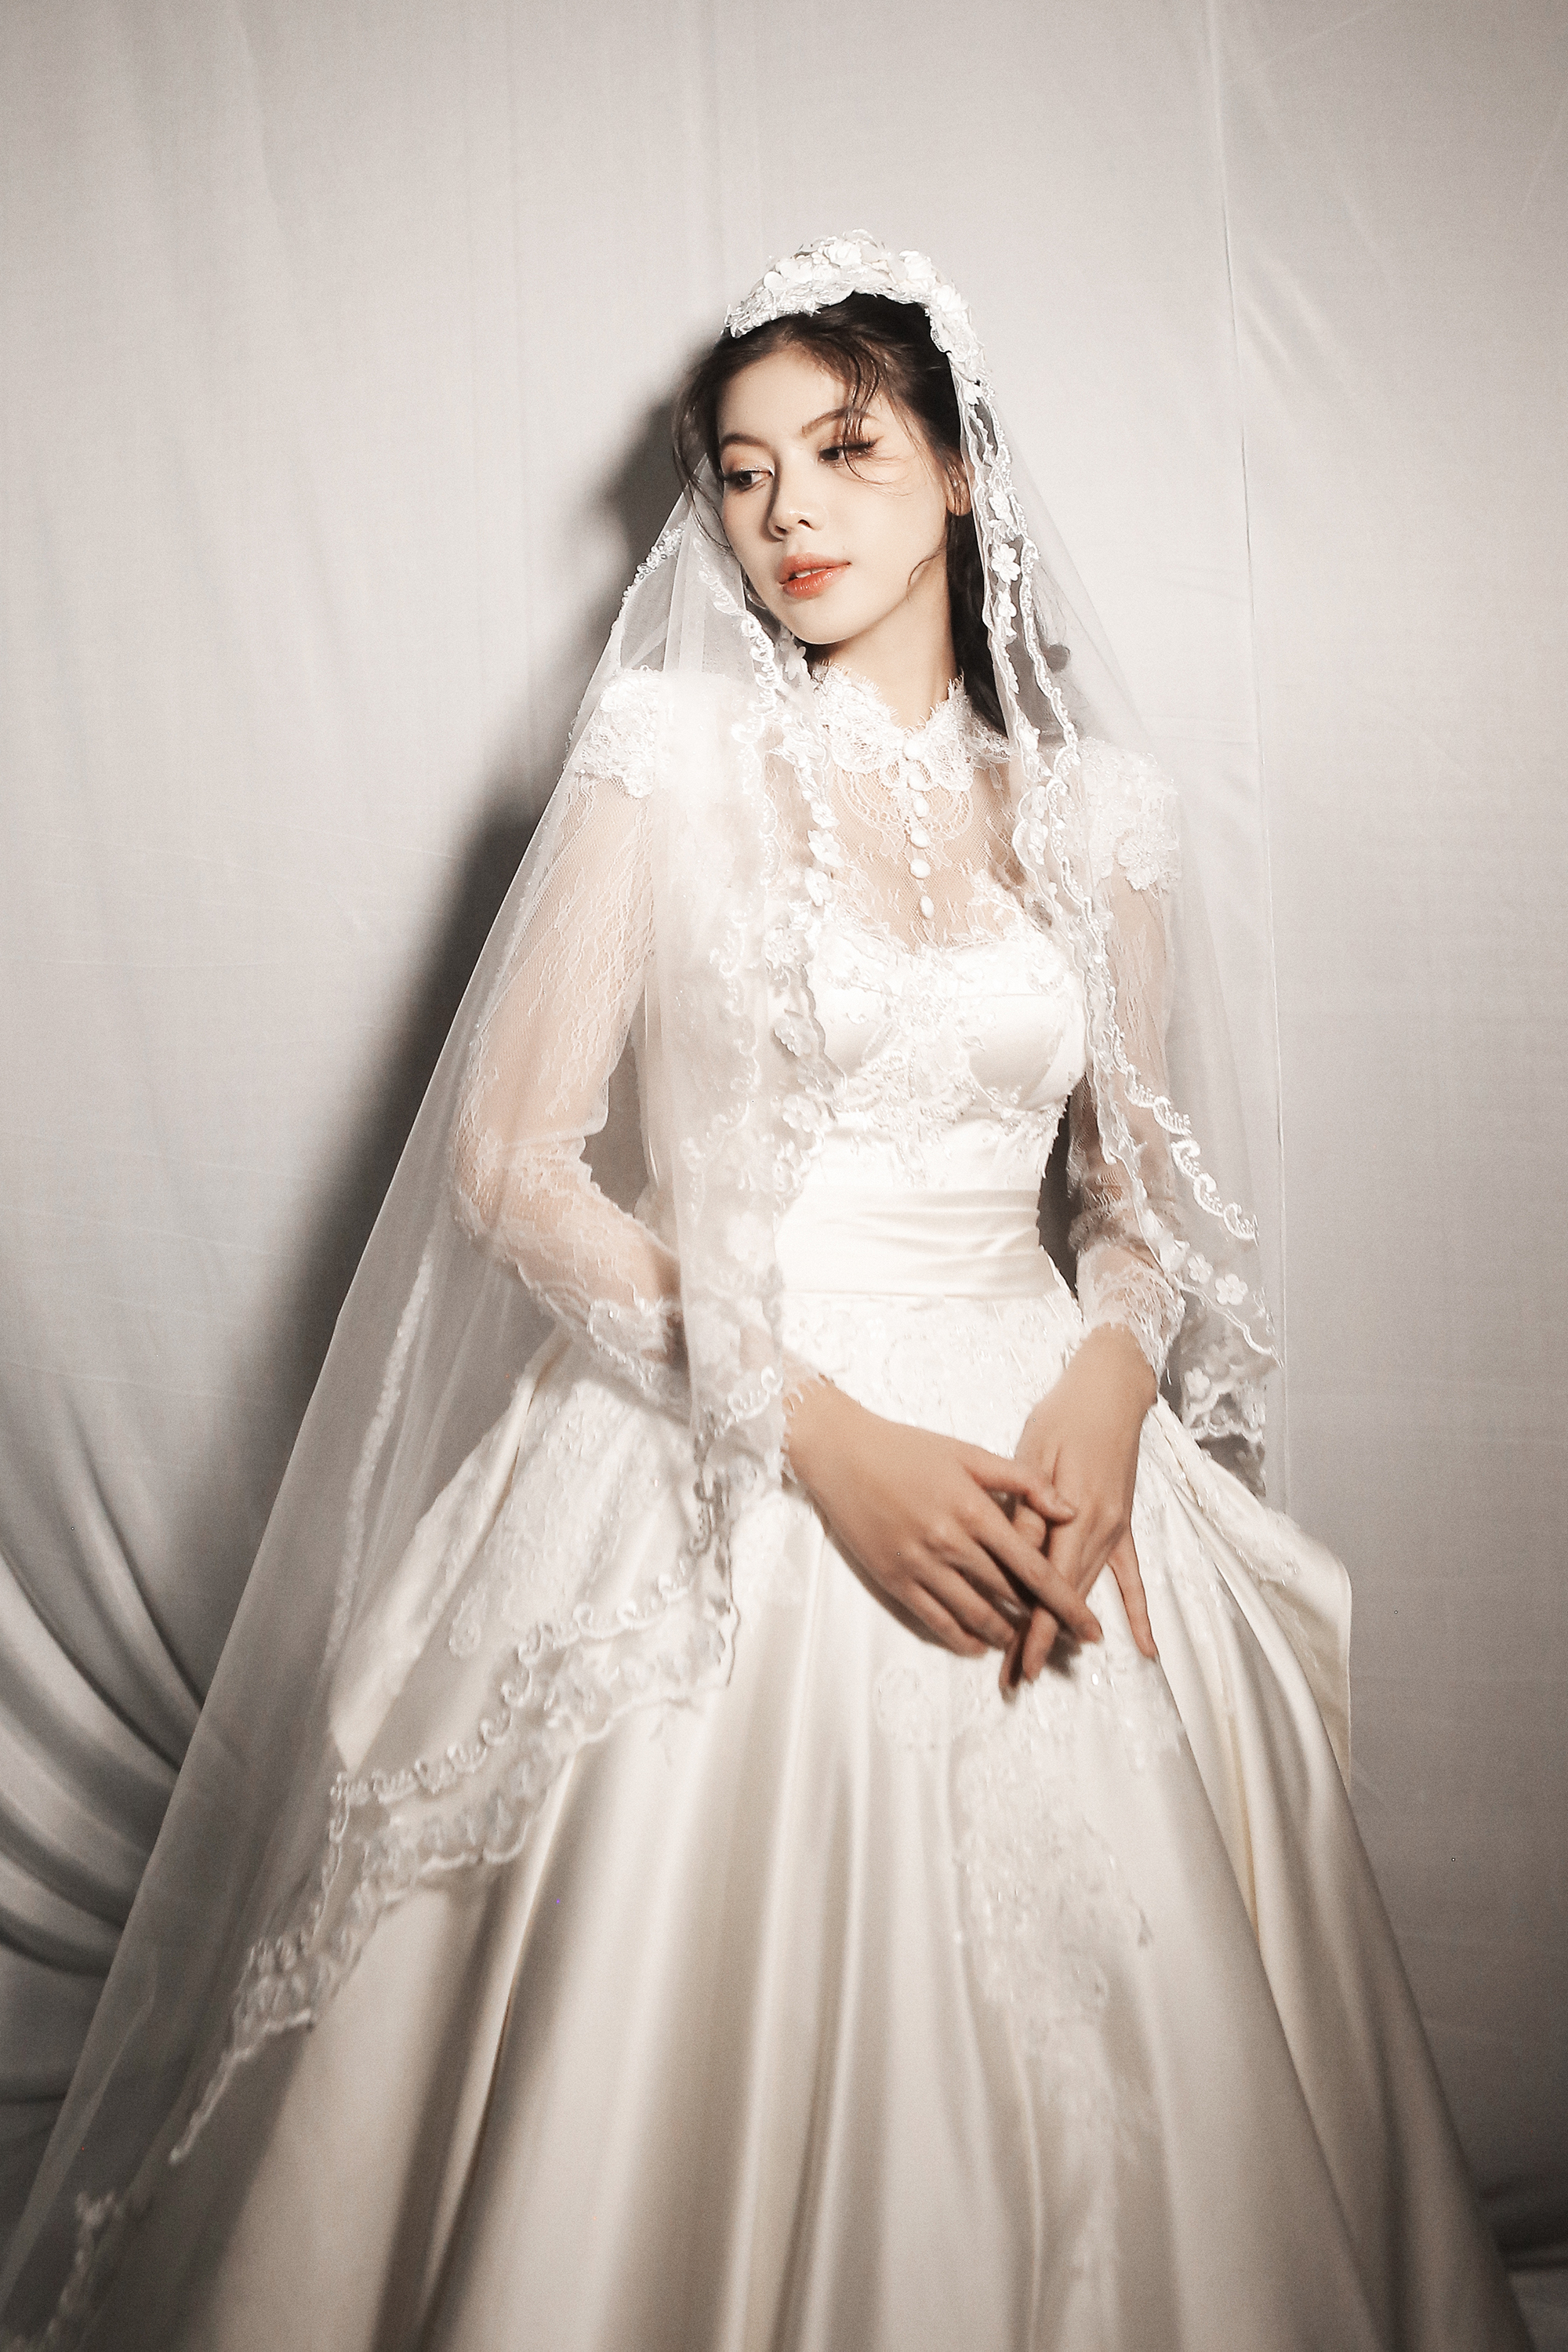 Á hậu Thủy Tiên trình diễn áo cưới cùng Hoa hậu đẹp nhất châu Á 2009 - Ảnh 9.